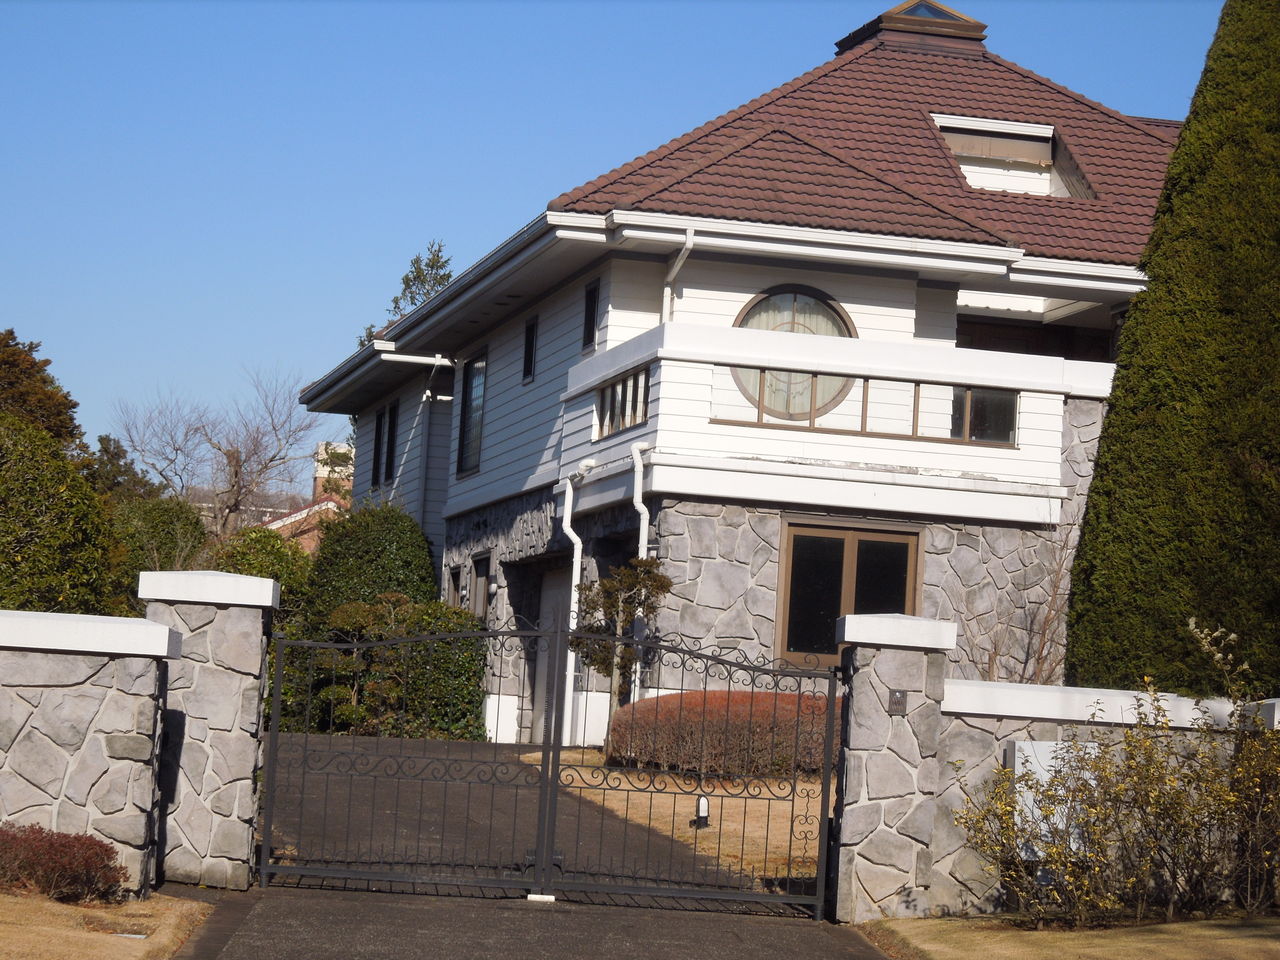 チバリーヒルズの写真集 東京都内の豪邸探索ブログ